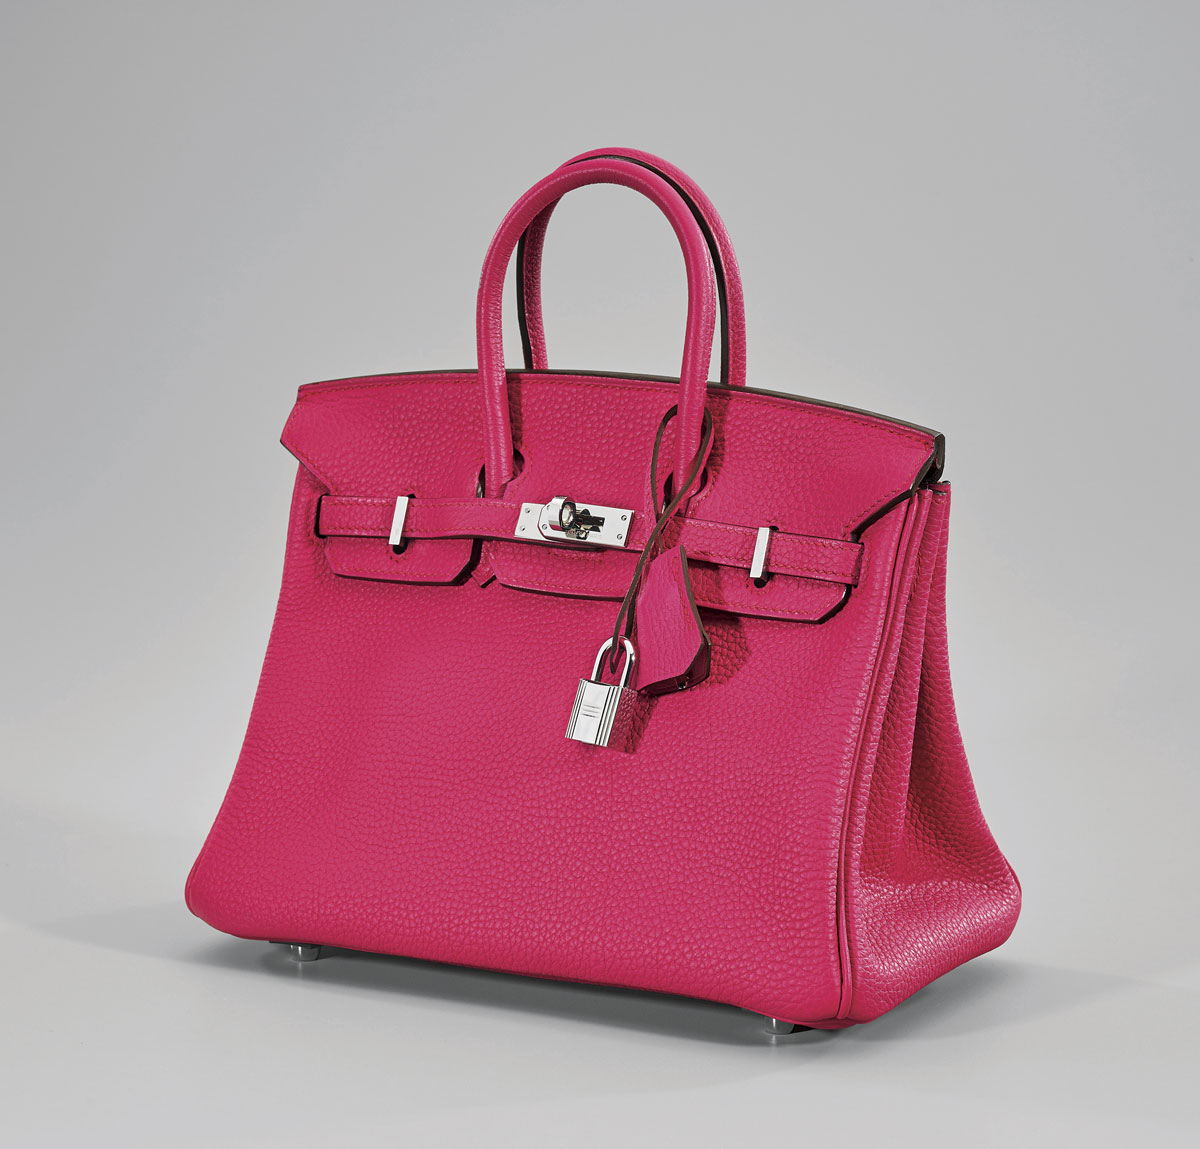 birkin bag hot pink